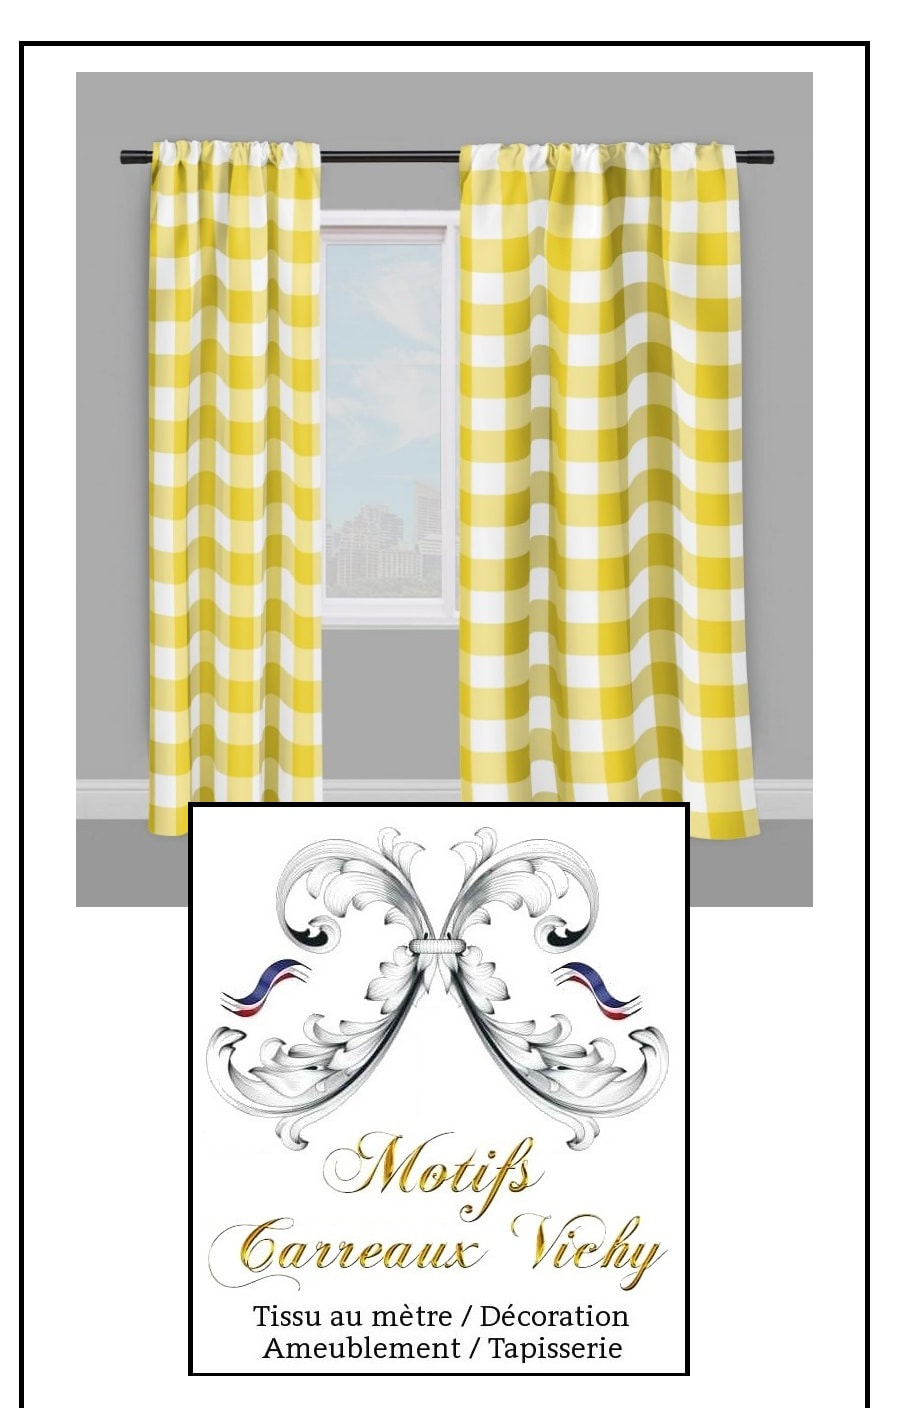 jaune pale clair pastel literie chambre décoration motif housse de couette tissu ameublement lit linge carreaux vichy blanc sur mesure au mètre